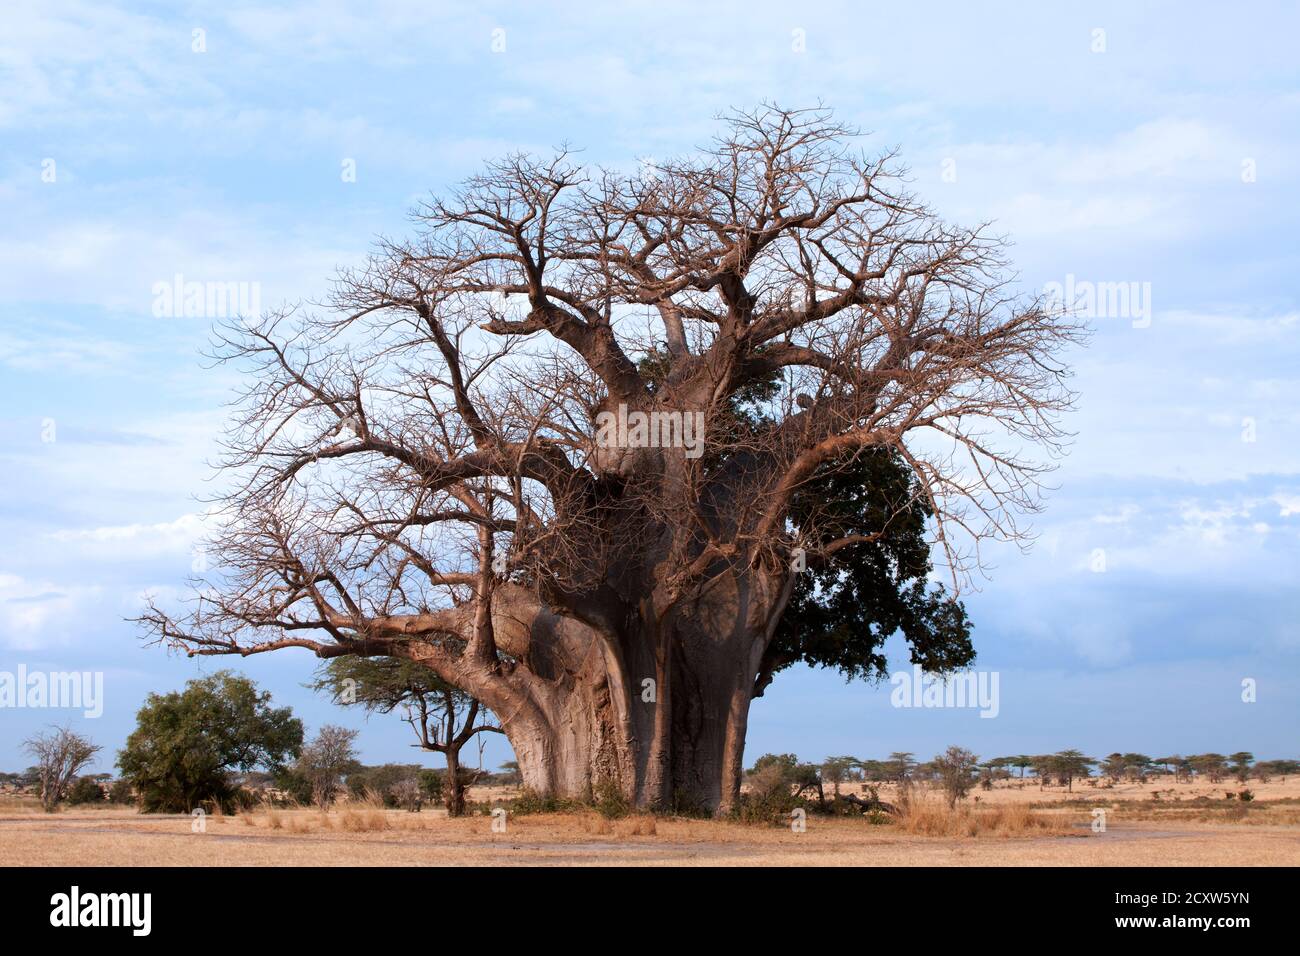 Questo Baobab, conosciuto come "il Grande albero" nella Selous Game Reserve è considerato uno dei più massicci in Tanzania. Certamente un vero colosso naturale Foto Stock